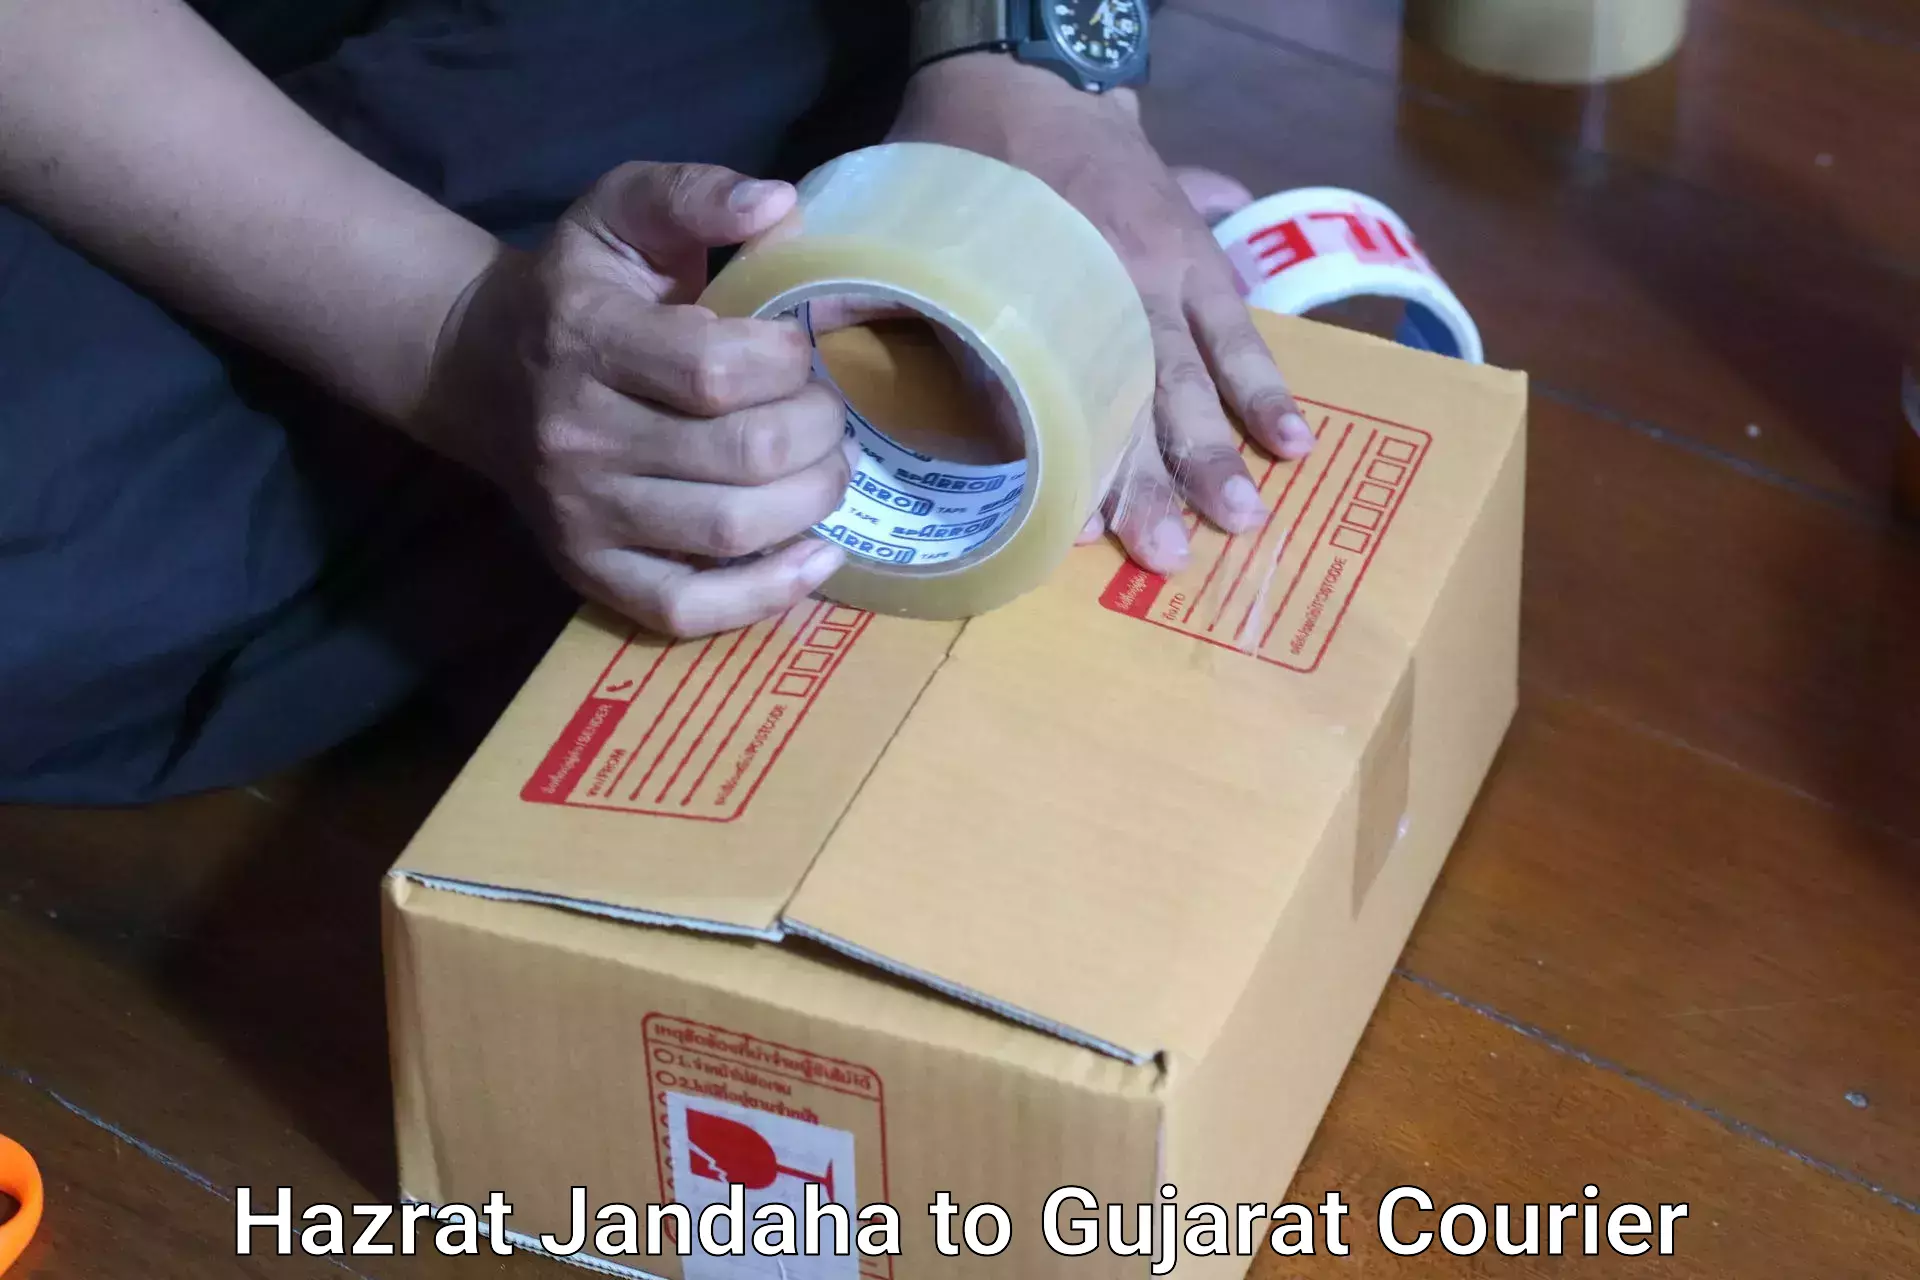 Luggage shipping service Hazrat Jandaha to Ahmedabad